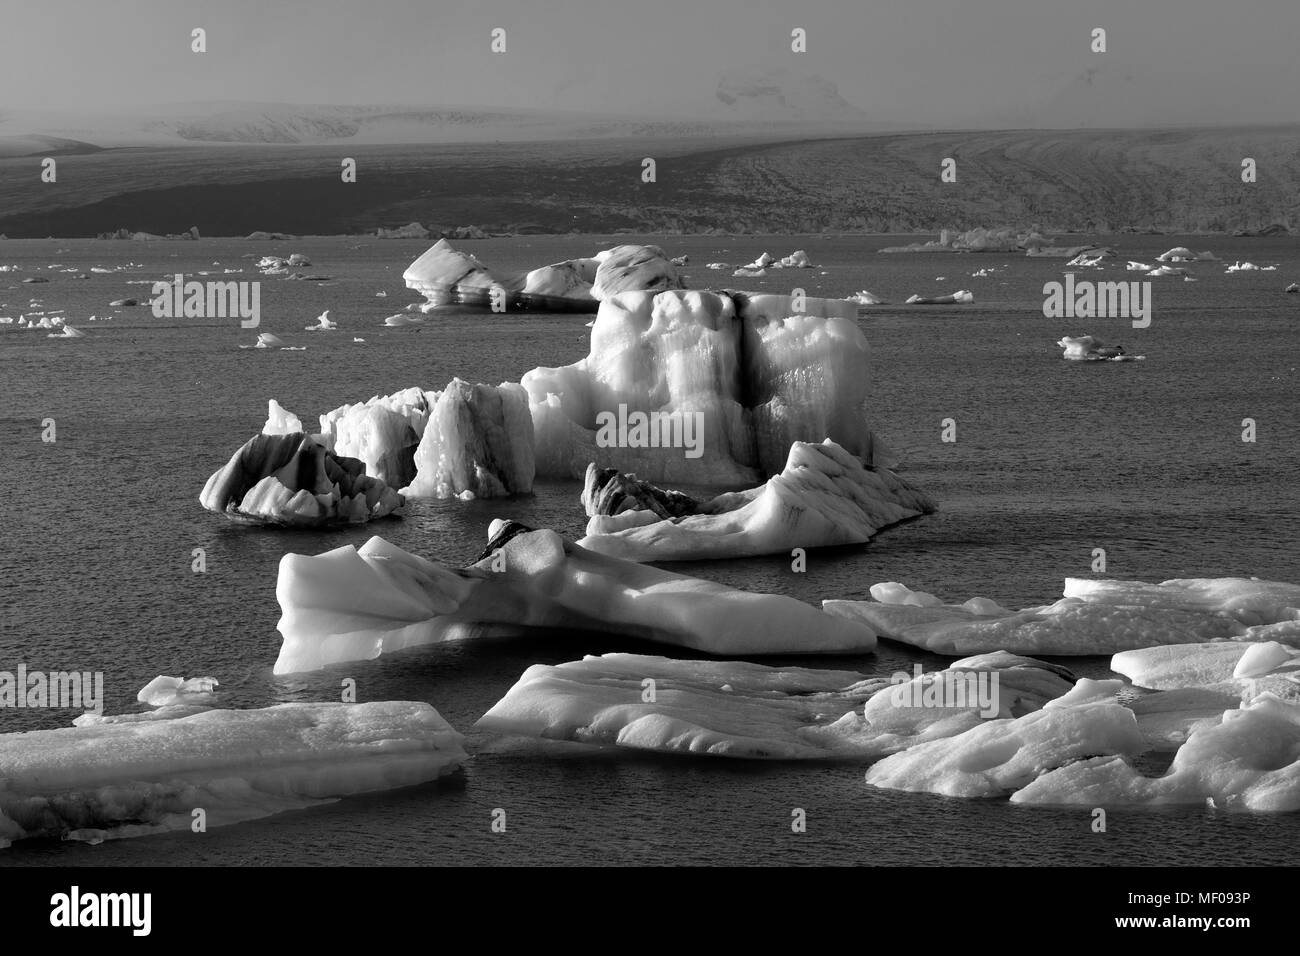 Jokulsarlon Glacial Lagoon en noir et blanc, Vatnajokull, Islande Banque D'Images